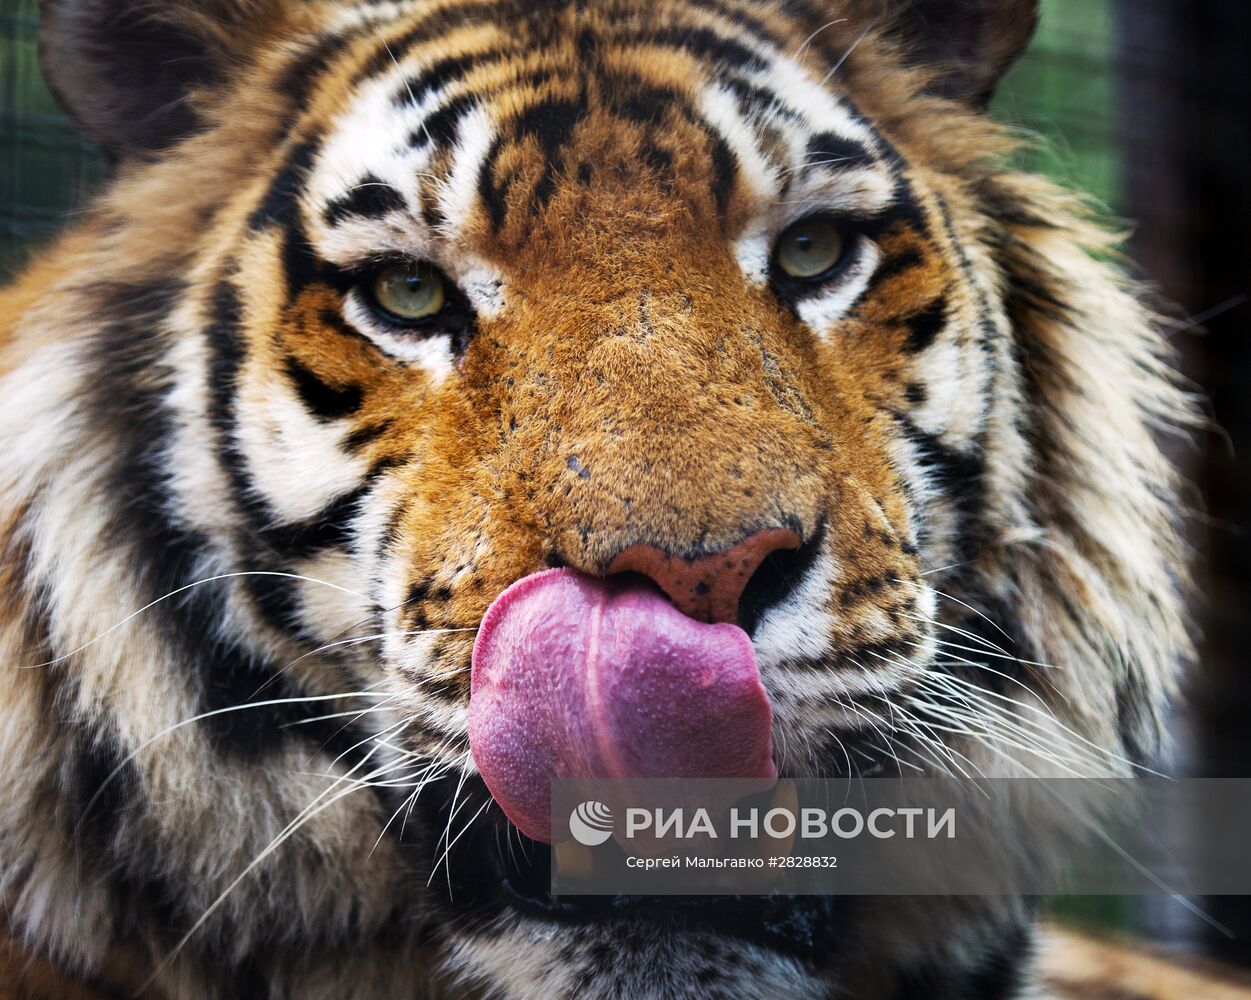 Открытие зоопарка "Сказка" в Крыму